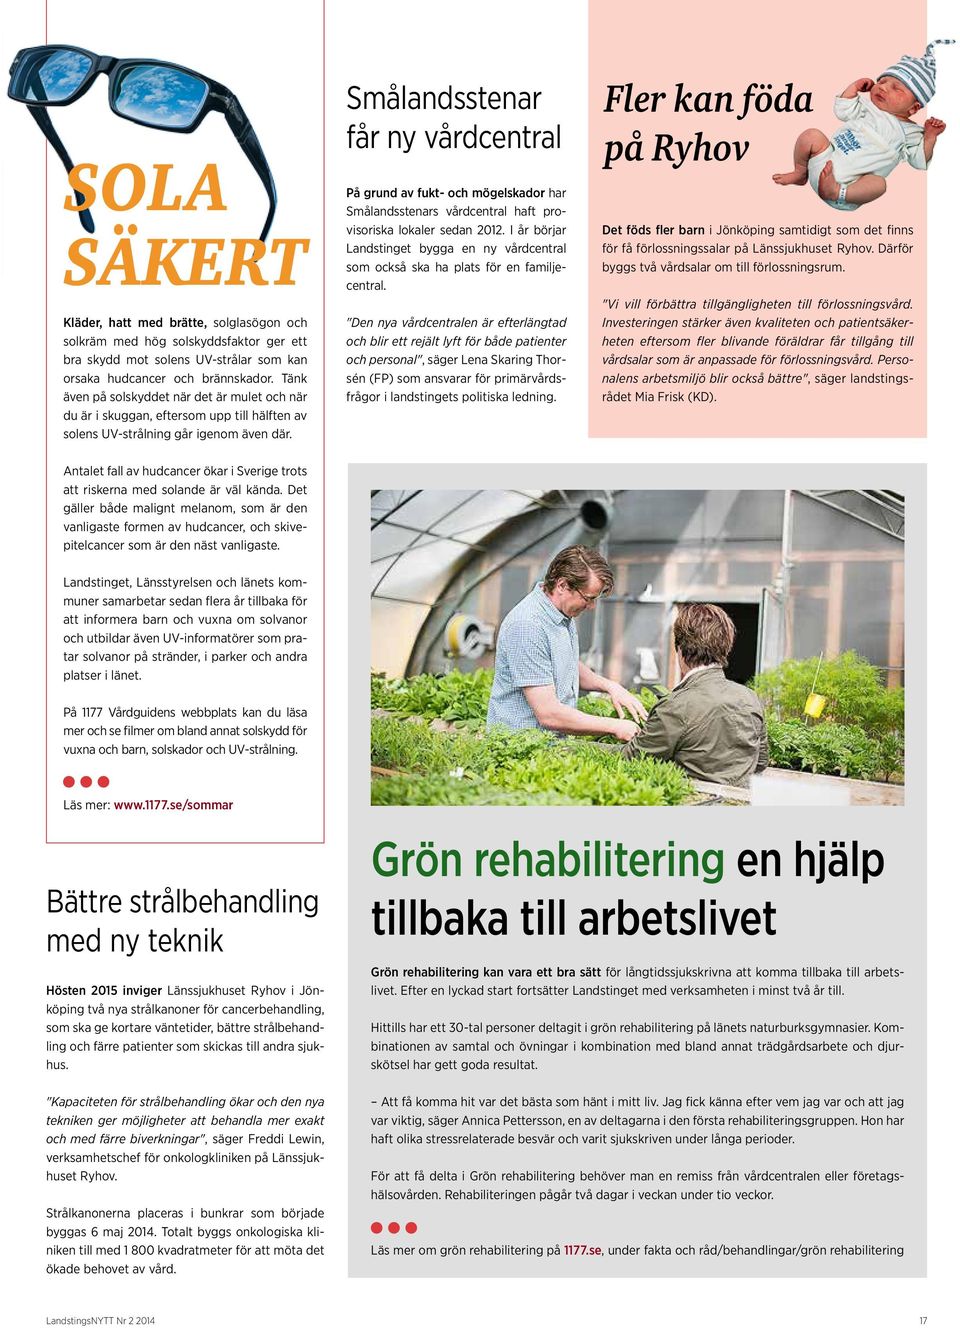 Smålandsstenar får ny vårdcentral På grund av fukt- och mögelskador har Smålandsstenars vårdcentral haft provisoriska lokaler sedan 2012.